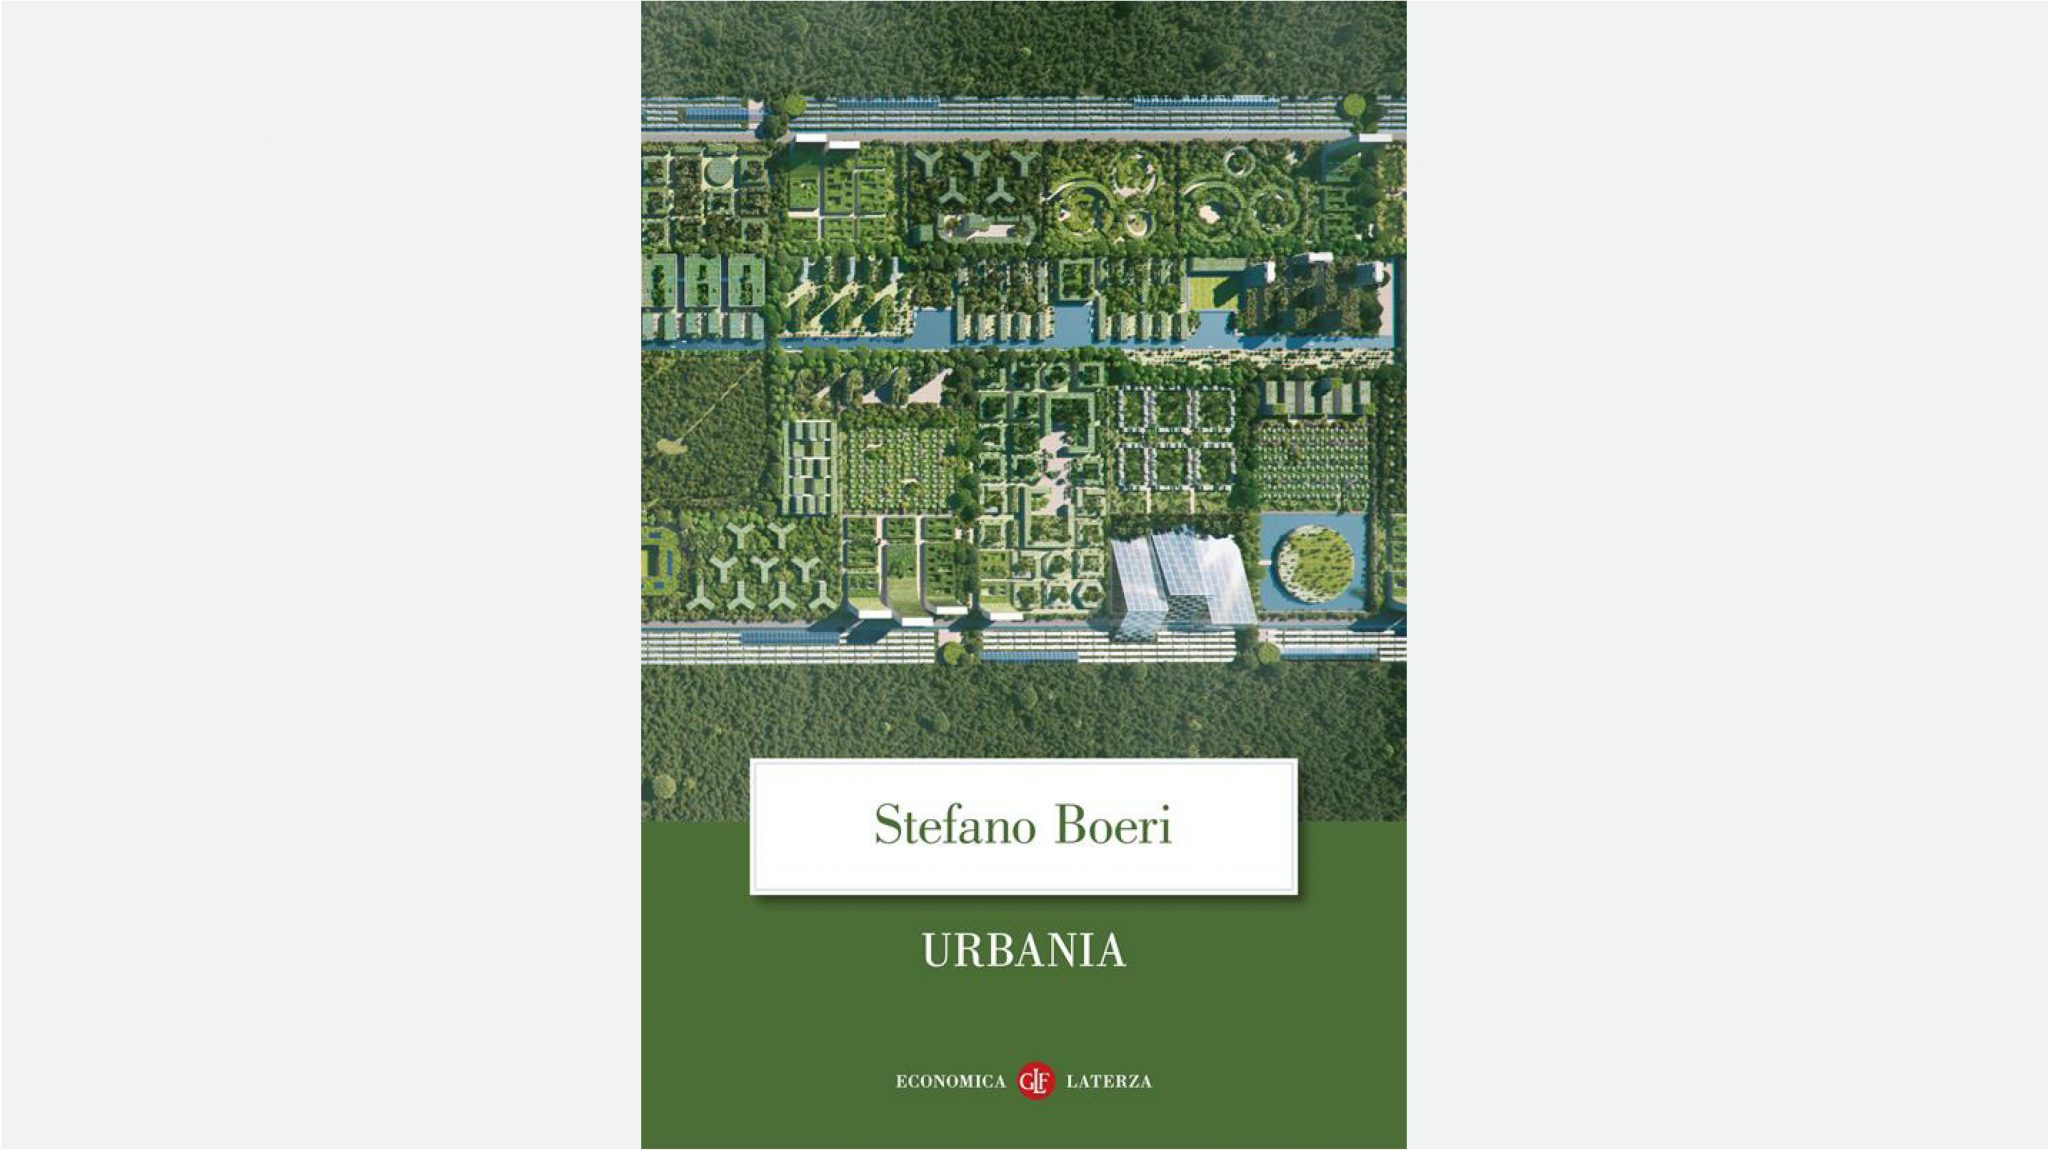 Urbania di Stefano Boeri in edizione tascabile economica